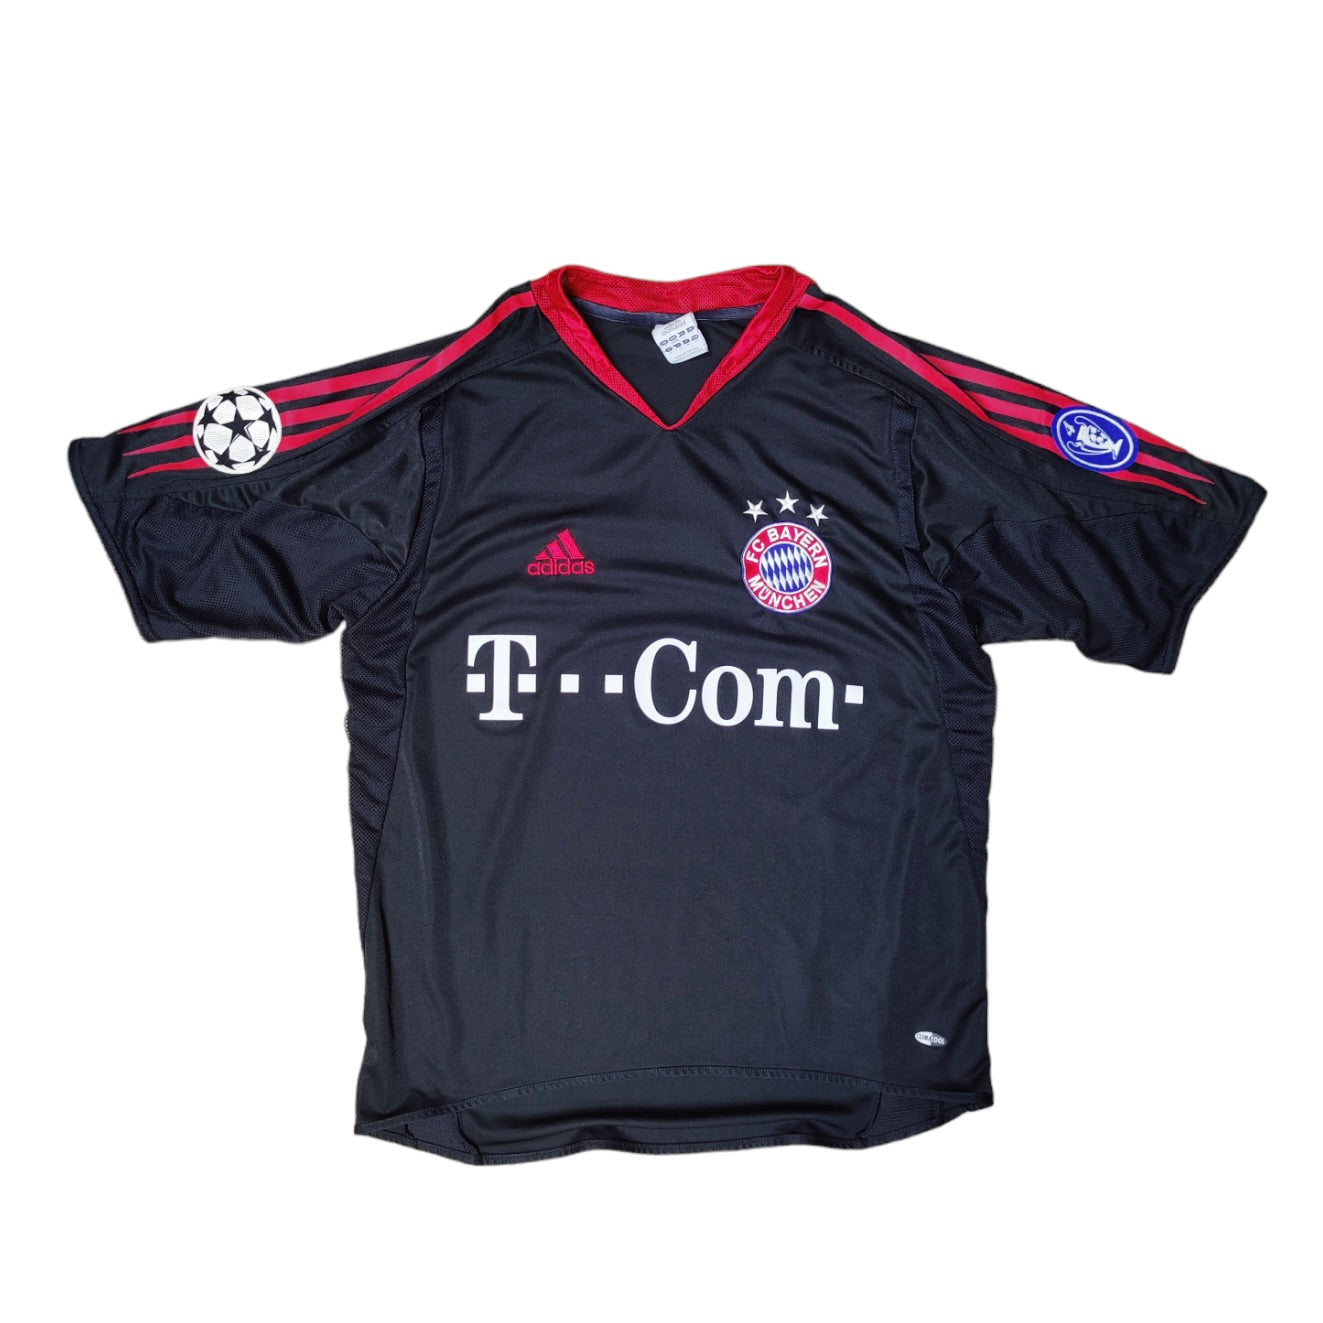 Adidas Bayern Munich 2004/2005 Third Champion Leauge Football Jersey